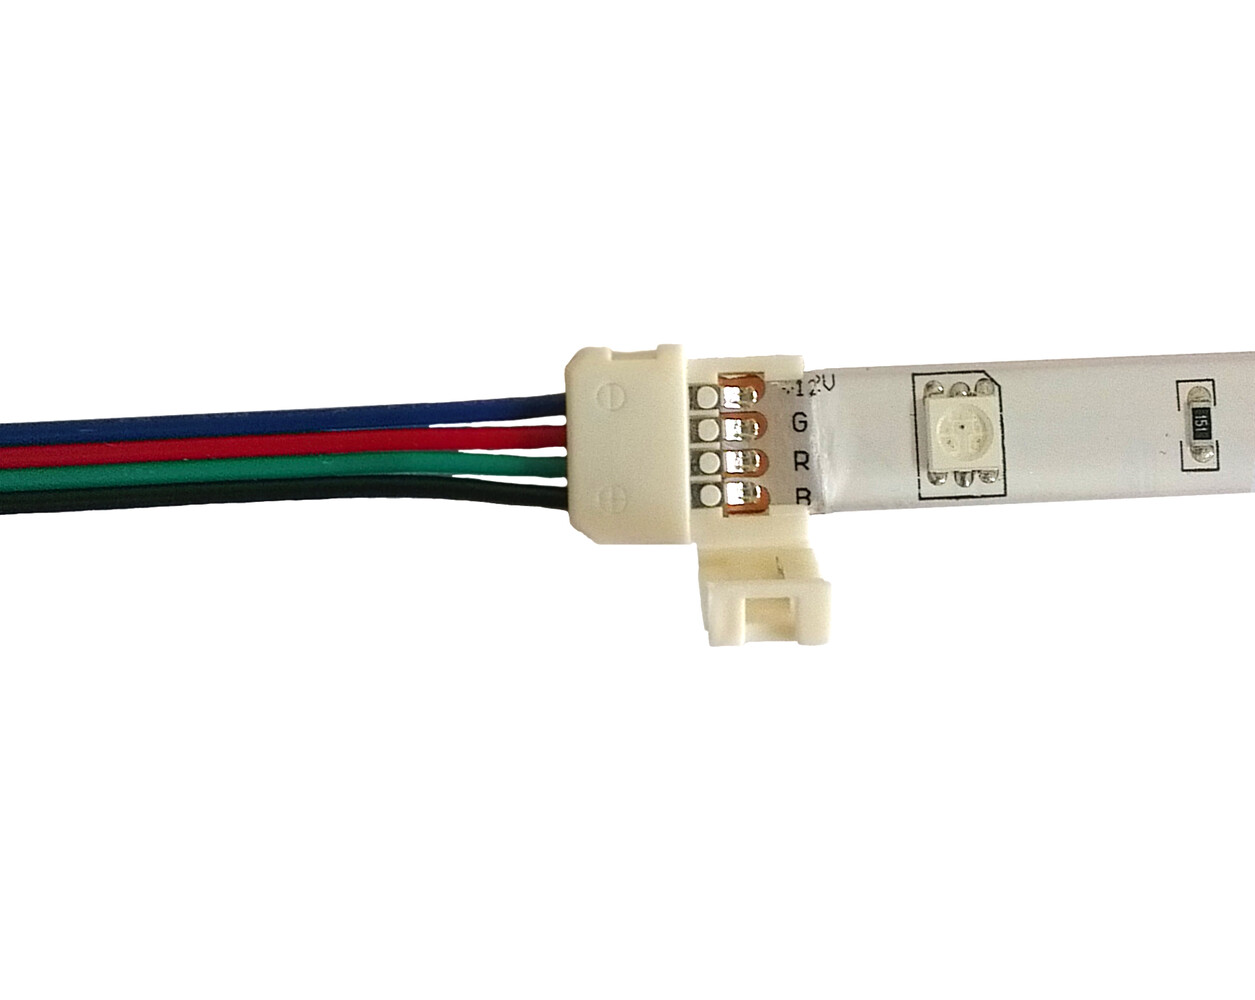 LED Universum LED Streifen Kabel 5cm 4 pol Kabel mit Klippbefestigung Schnellverbinder für RGB LED Streifen